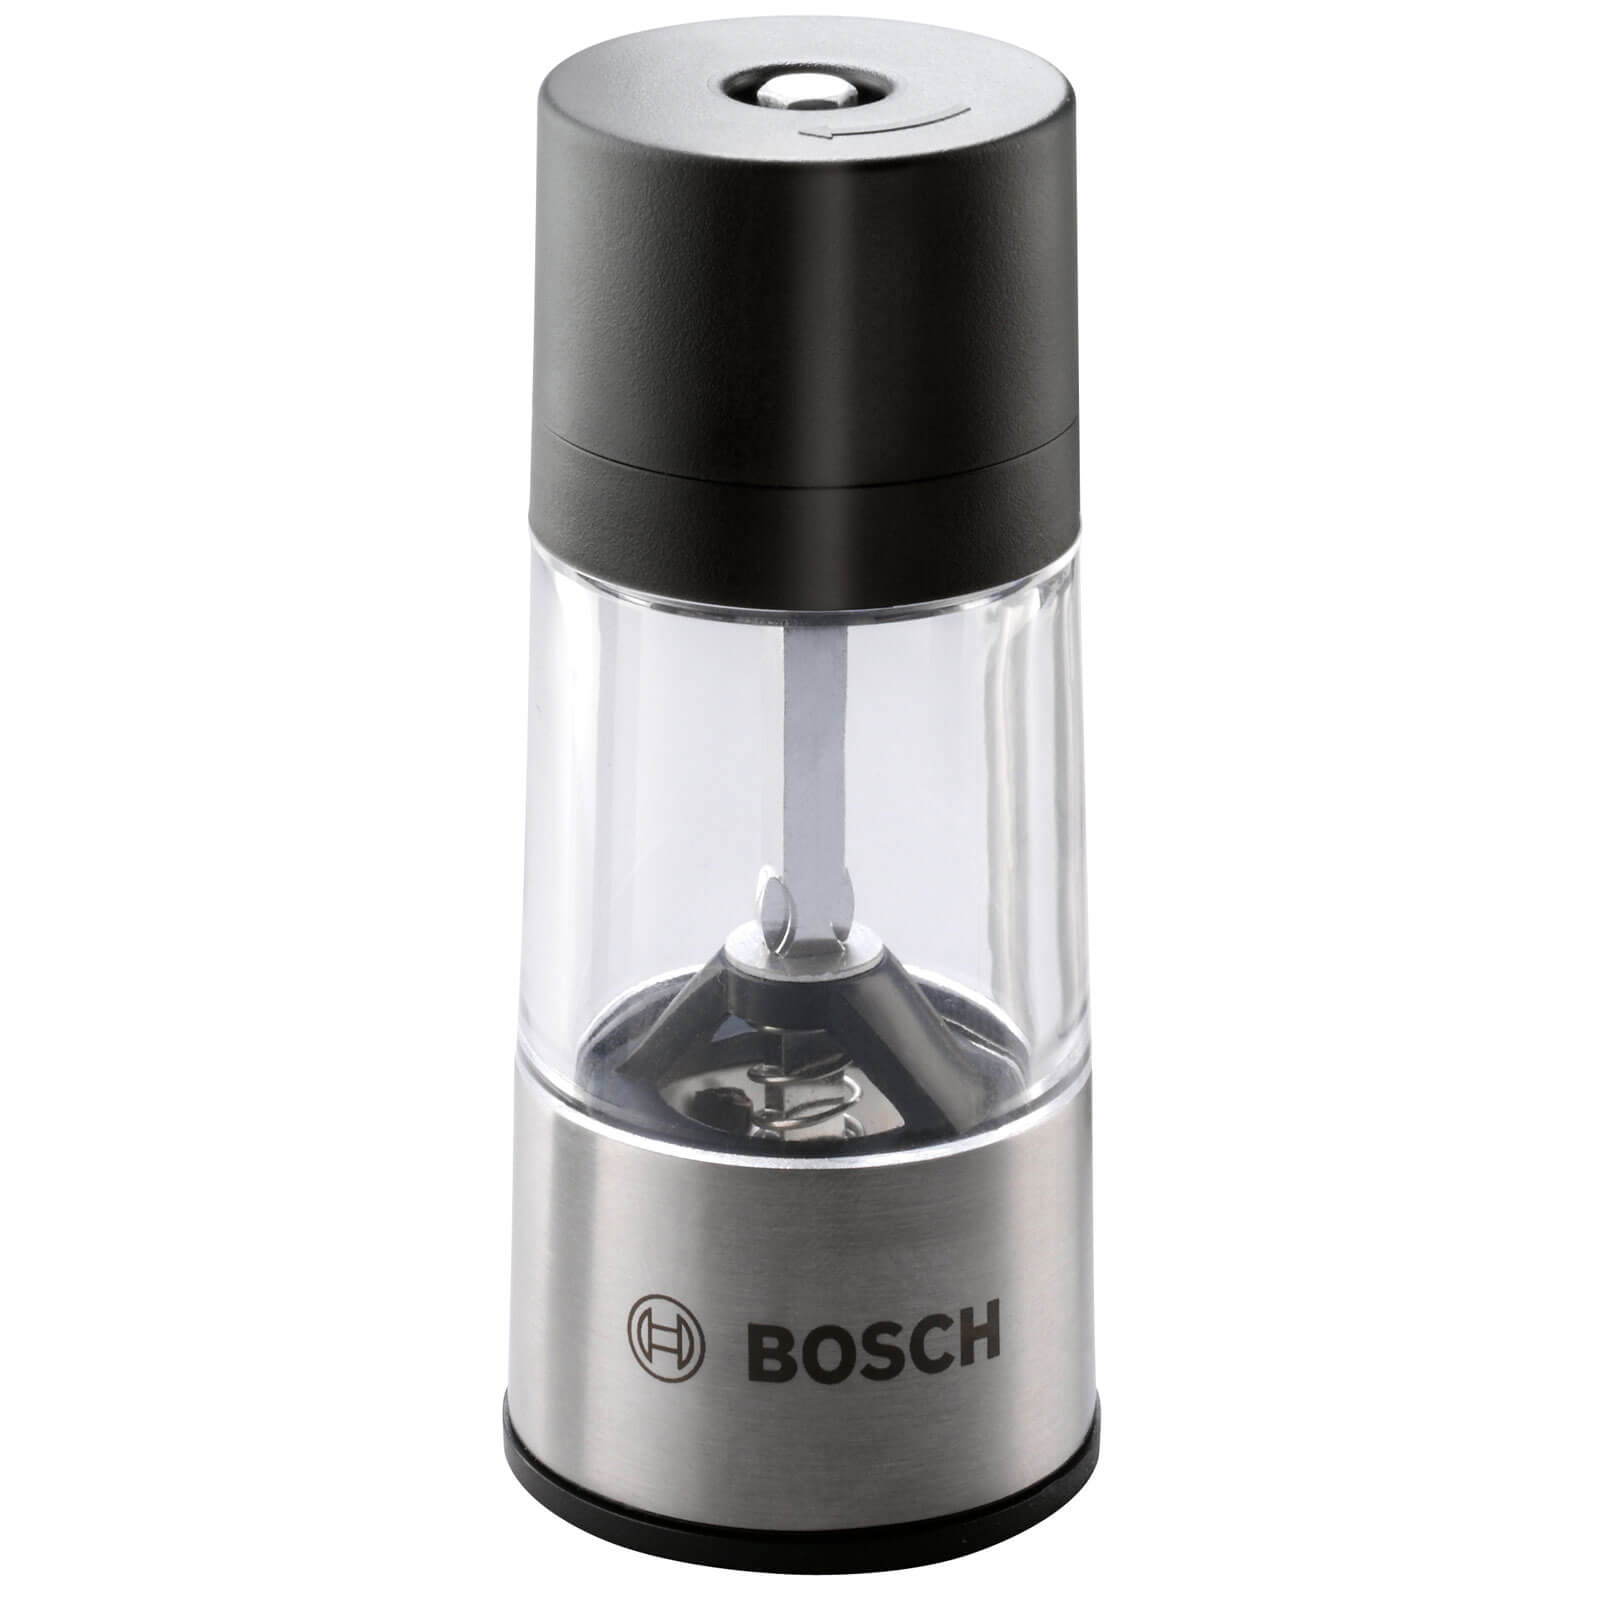 Bosch IXO BBQ Spice Mill Attachment for IXO Screwdrivers